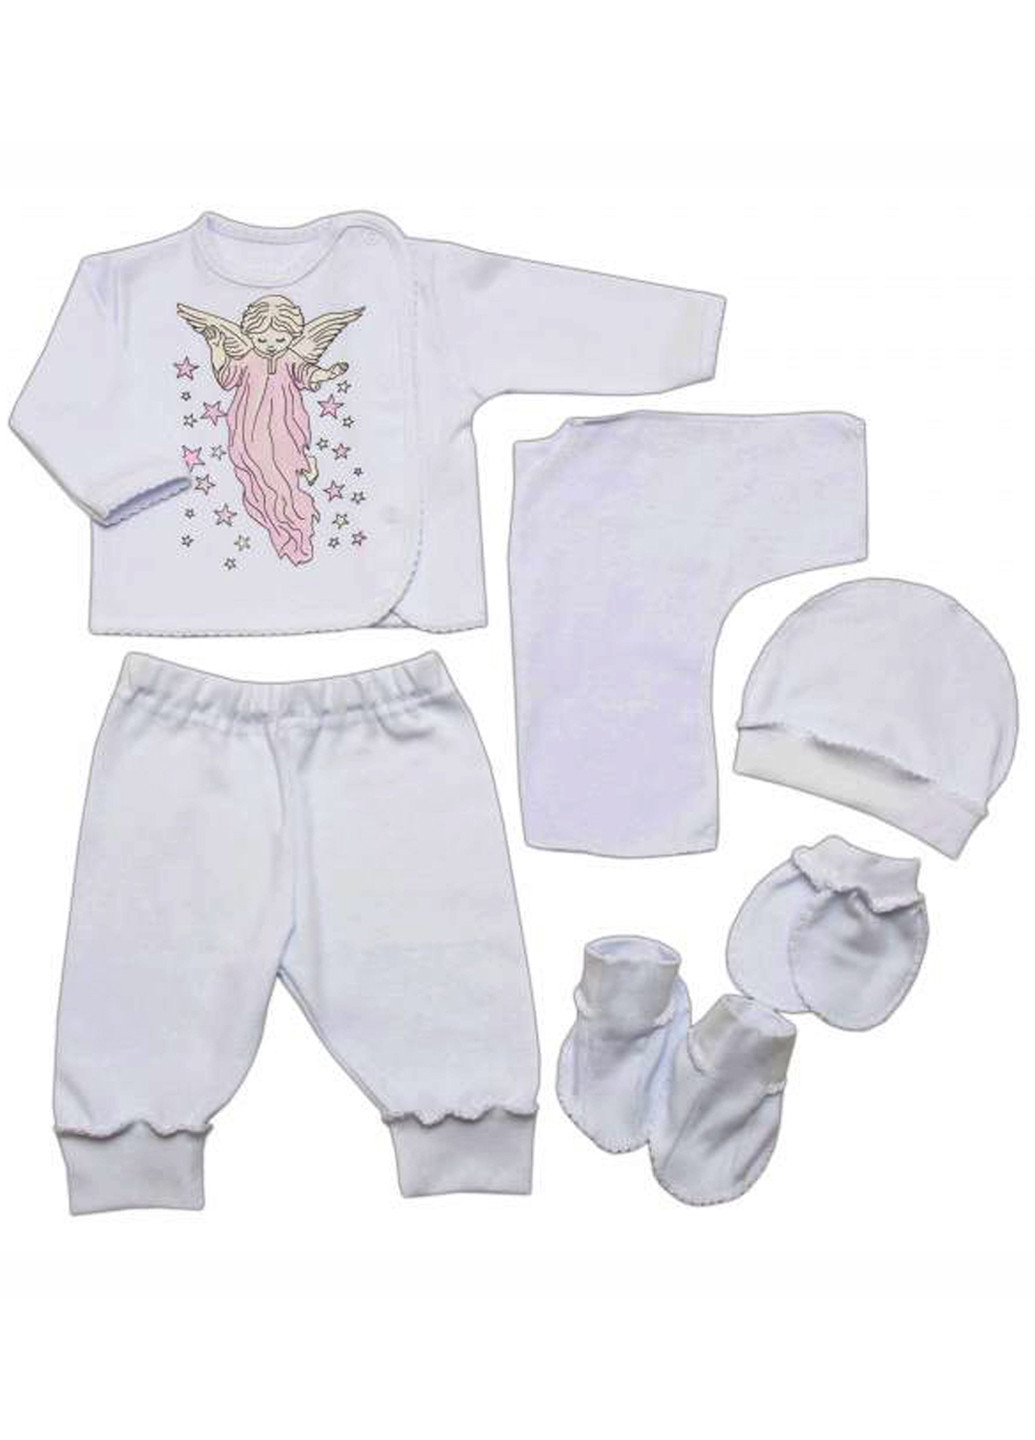 Белый демисезонный комплект (кофта, брюки, шапка, распашонка, царапки, пинетки) BabiesBerries